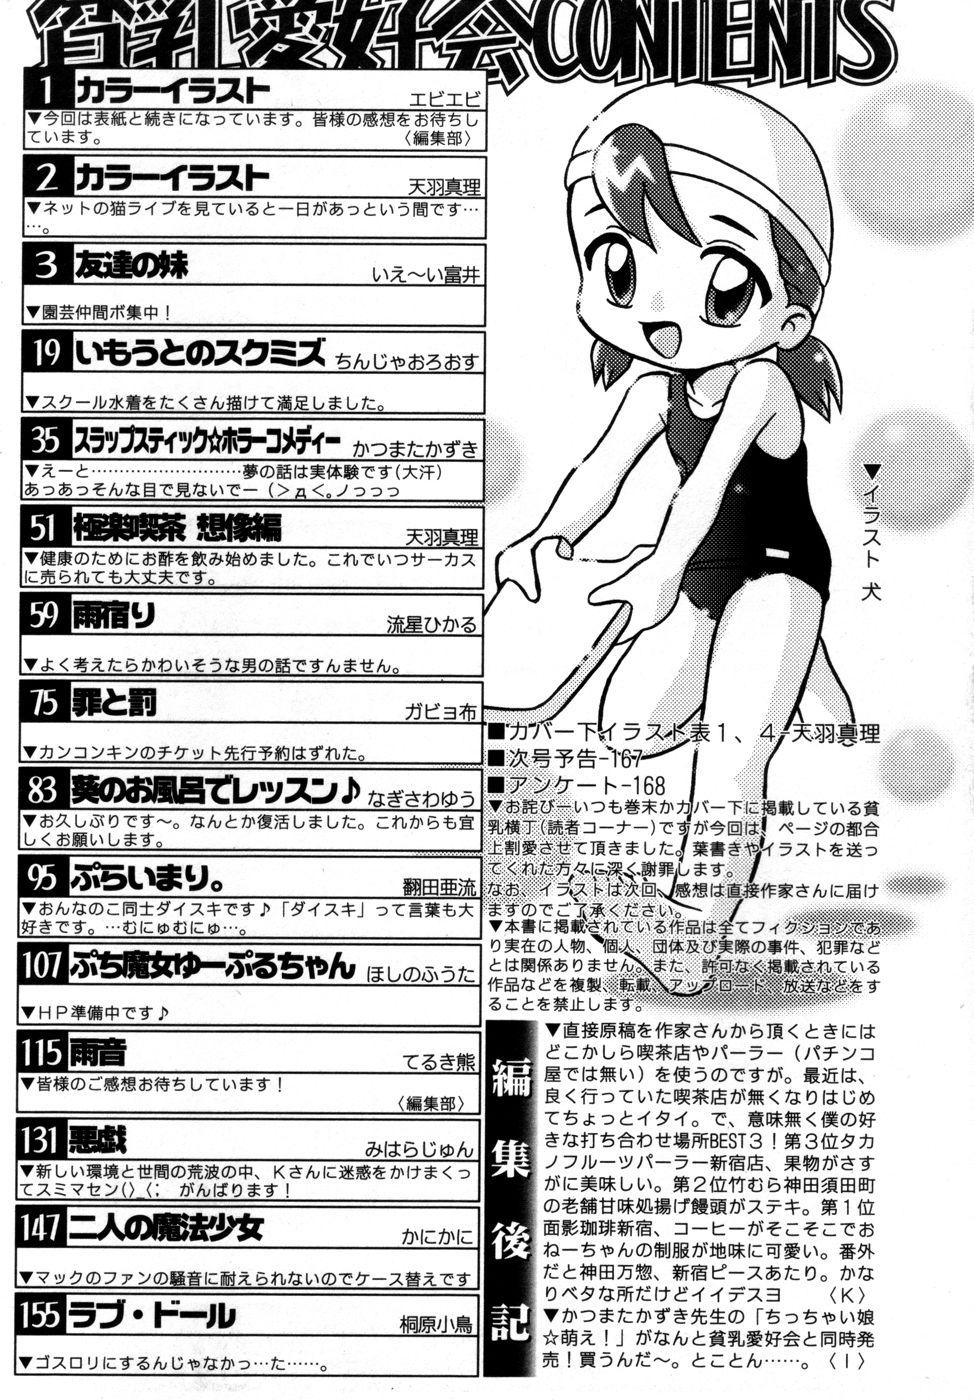 Perfect Body Hin-nyu v27 - Hin-nyu Aikou-kai Clip - Page 174